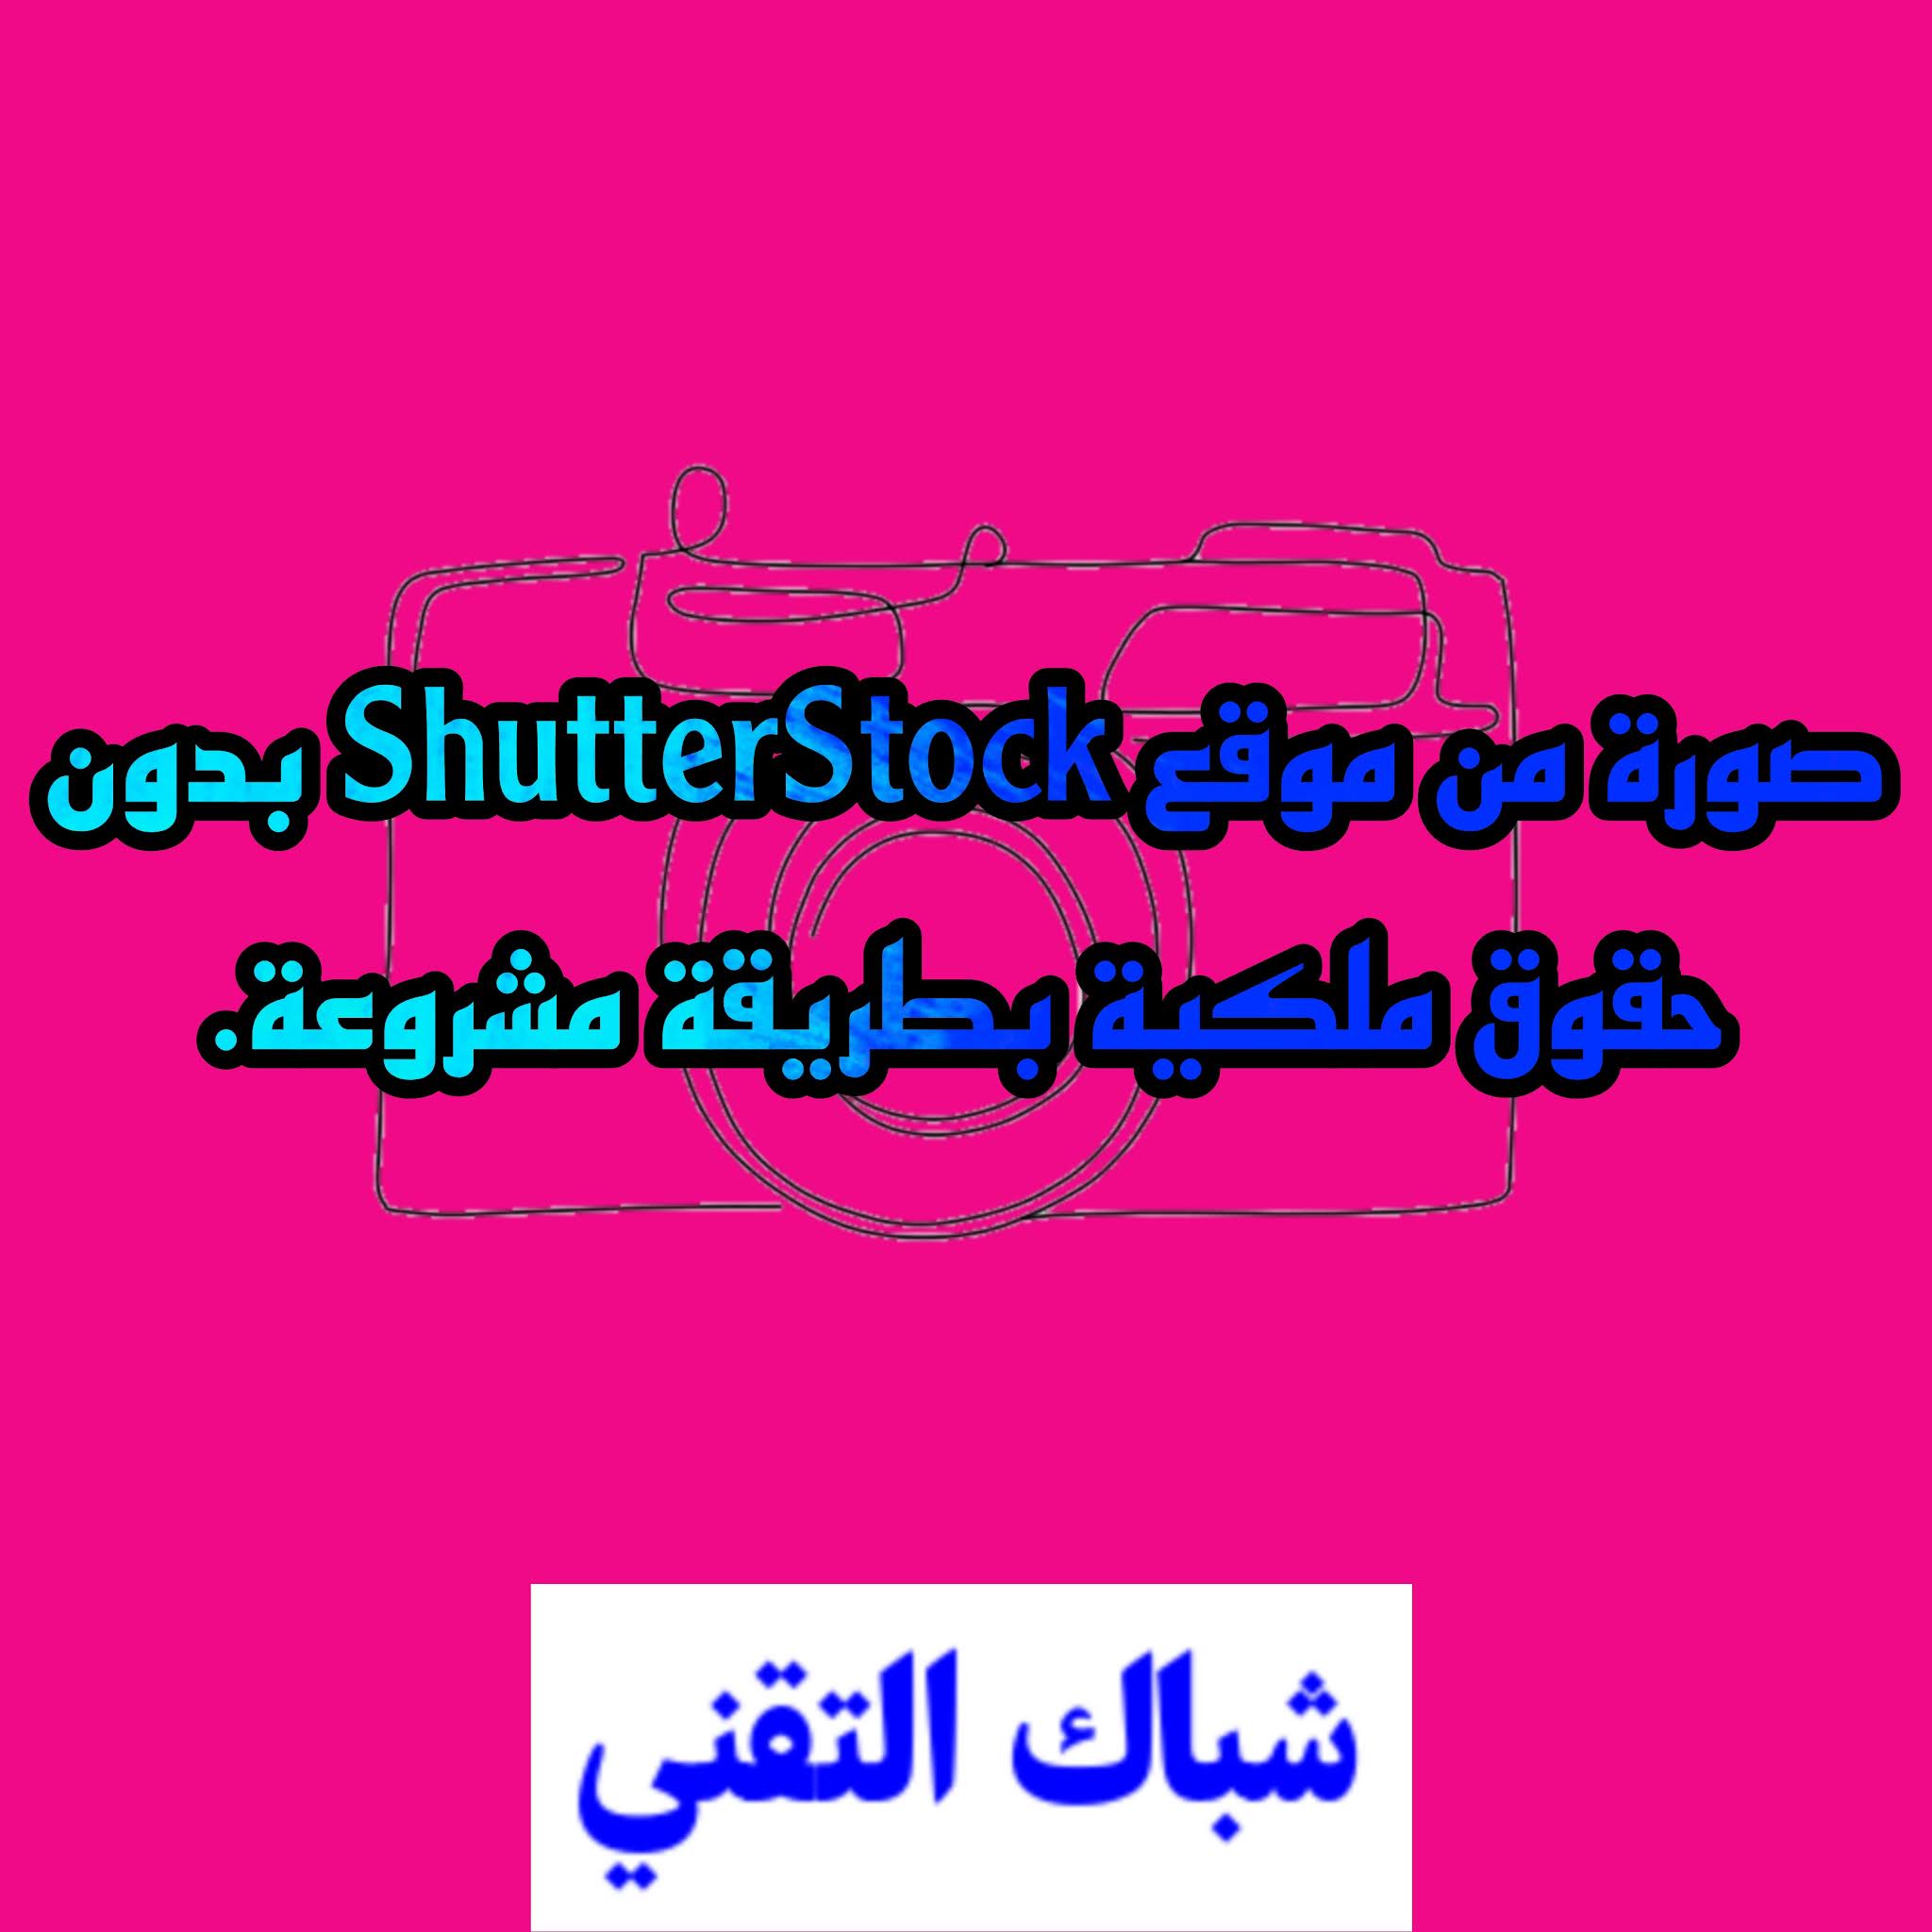 موقع shutterstock